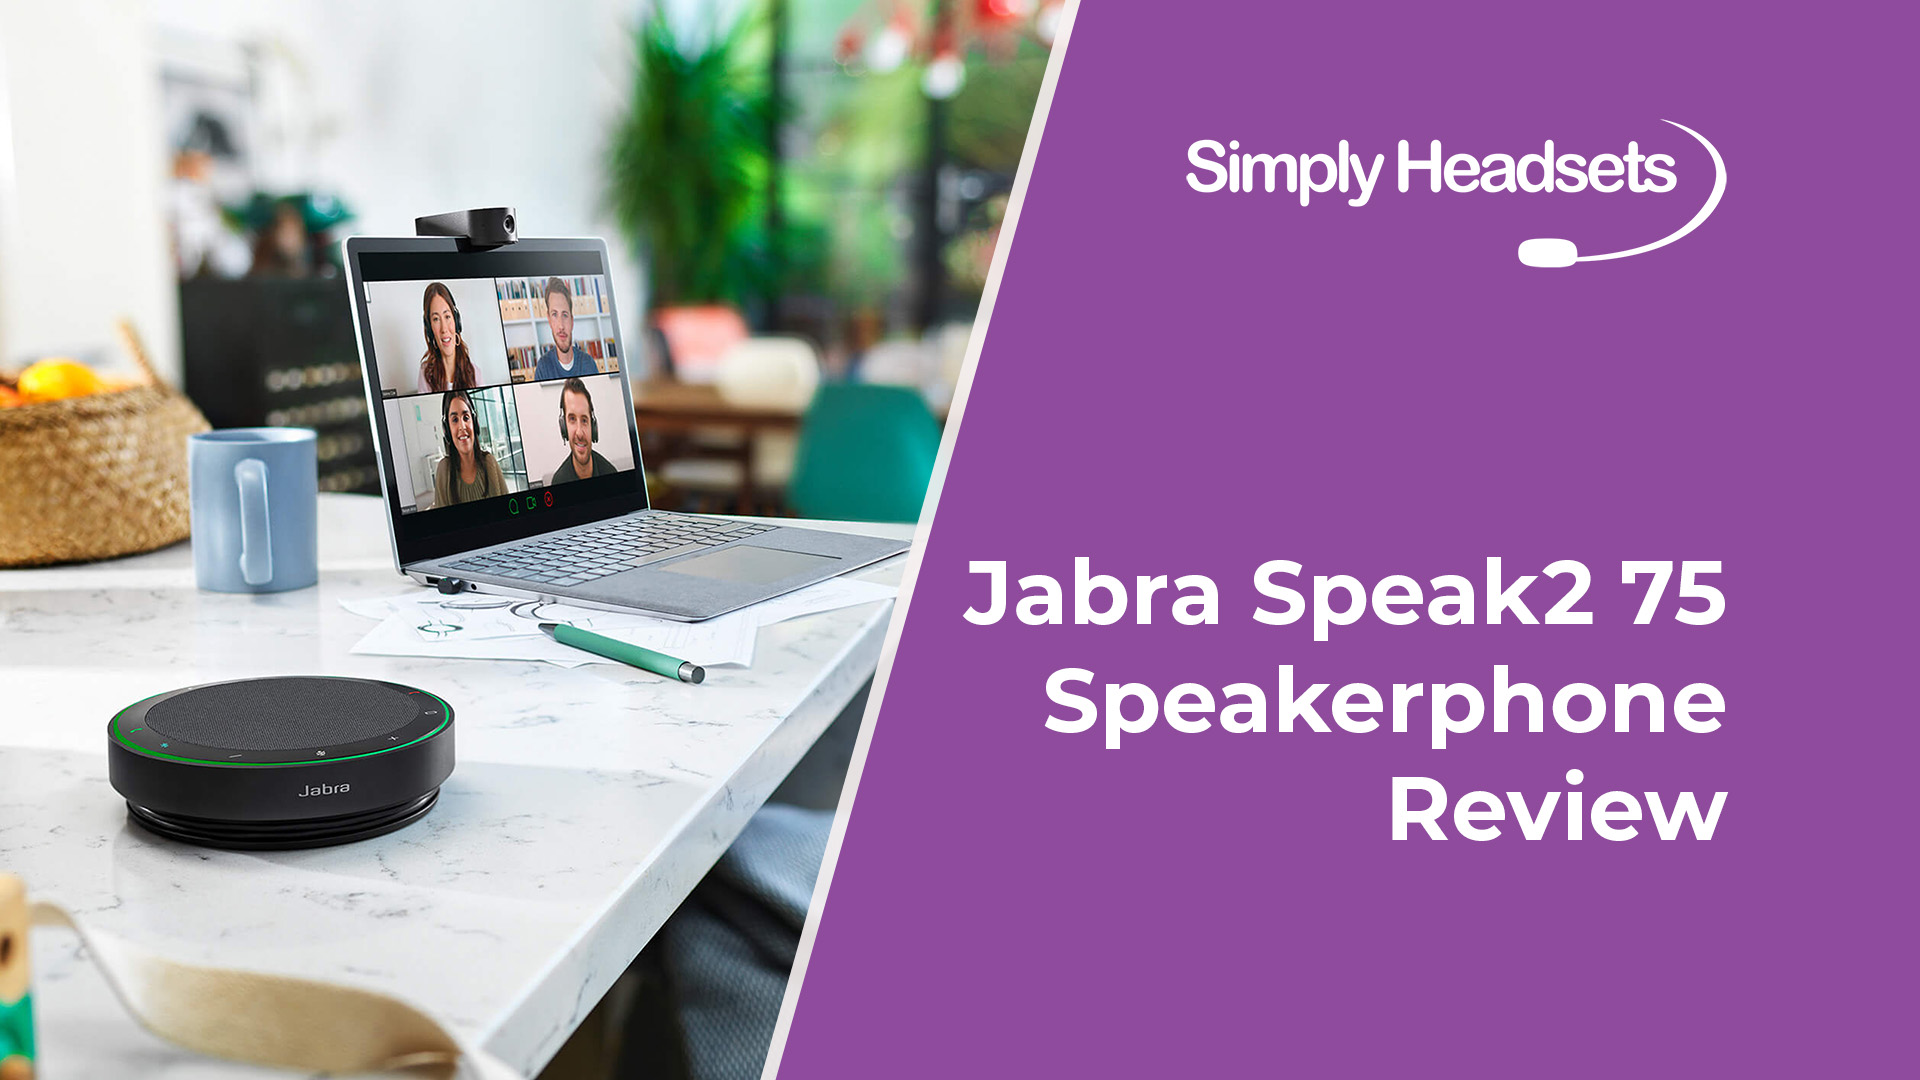 Jabra Speak2 75 Speakerphone Headsets Review Simply 